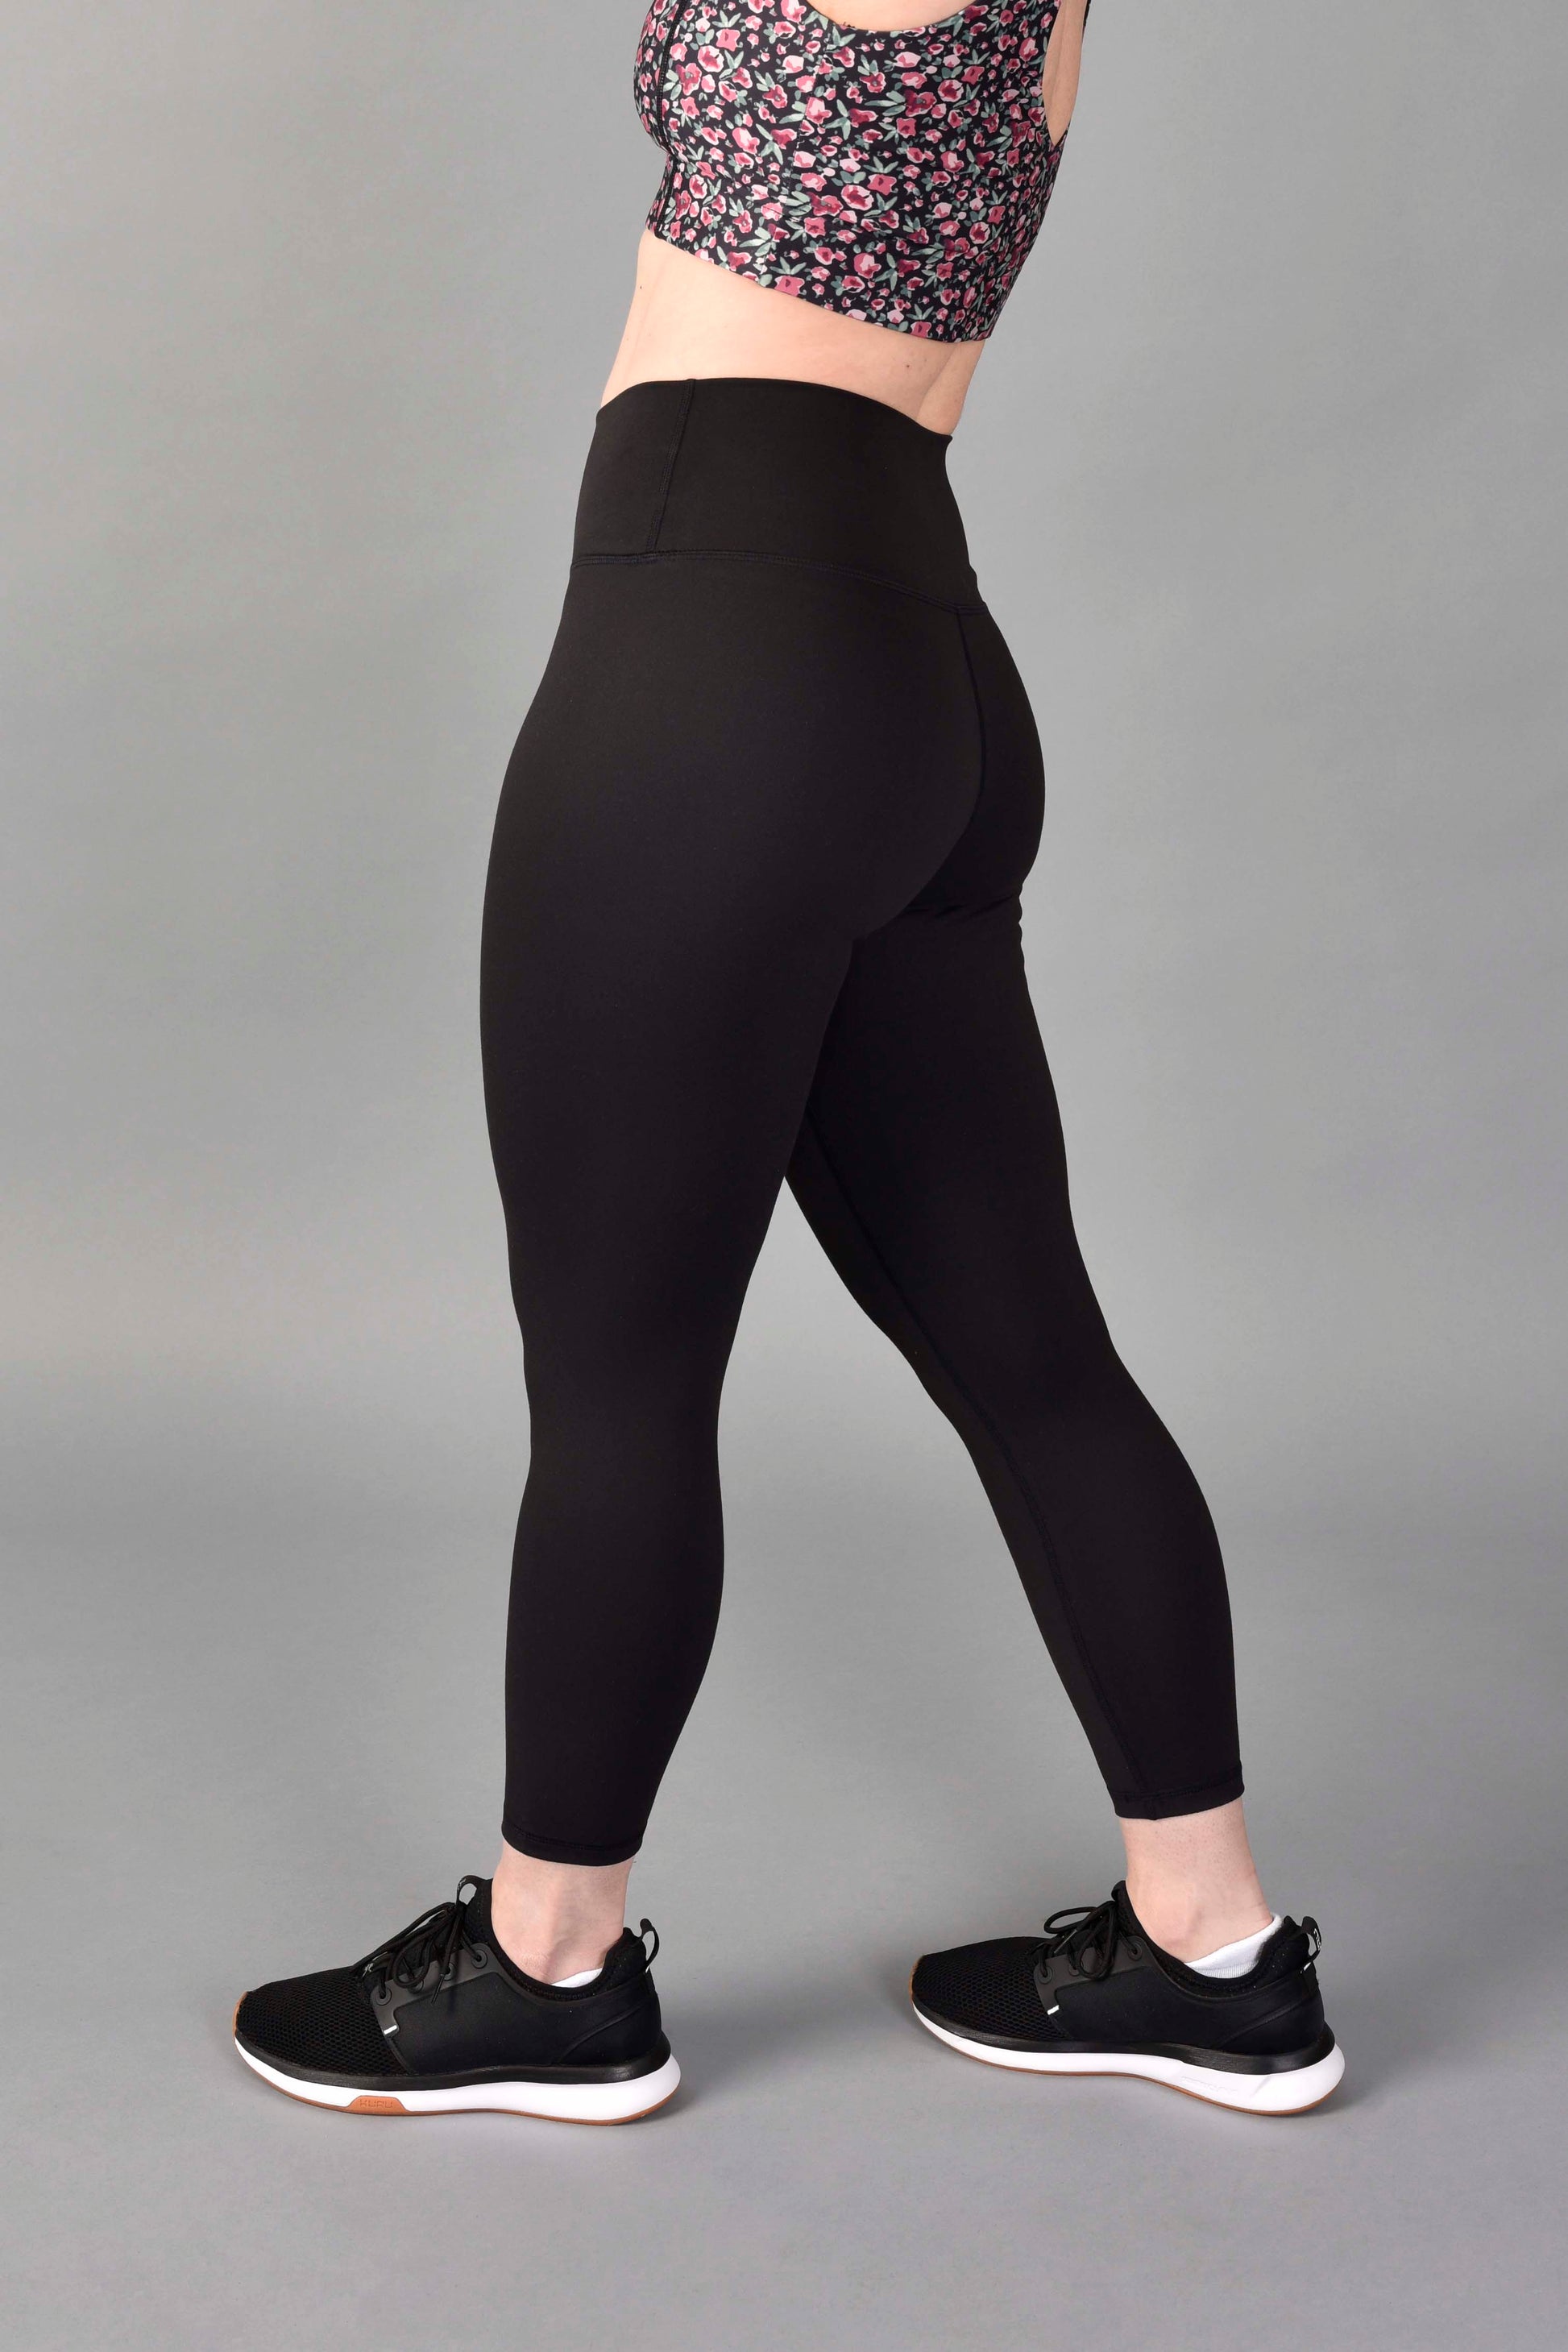 Fashion Pants! Velvety Super Soft Lightweight Leggings For Women Sports  Running Fitness Yoga Pants M Dark Gray 